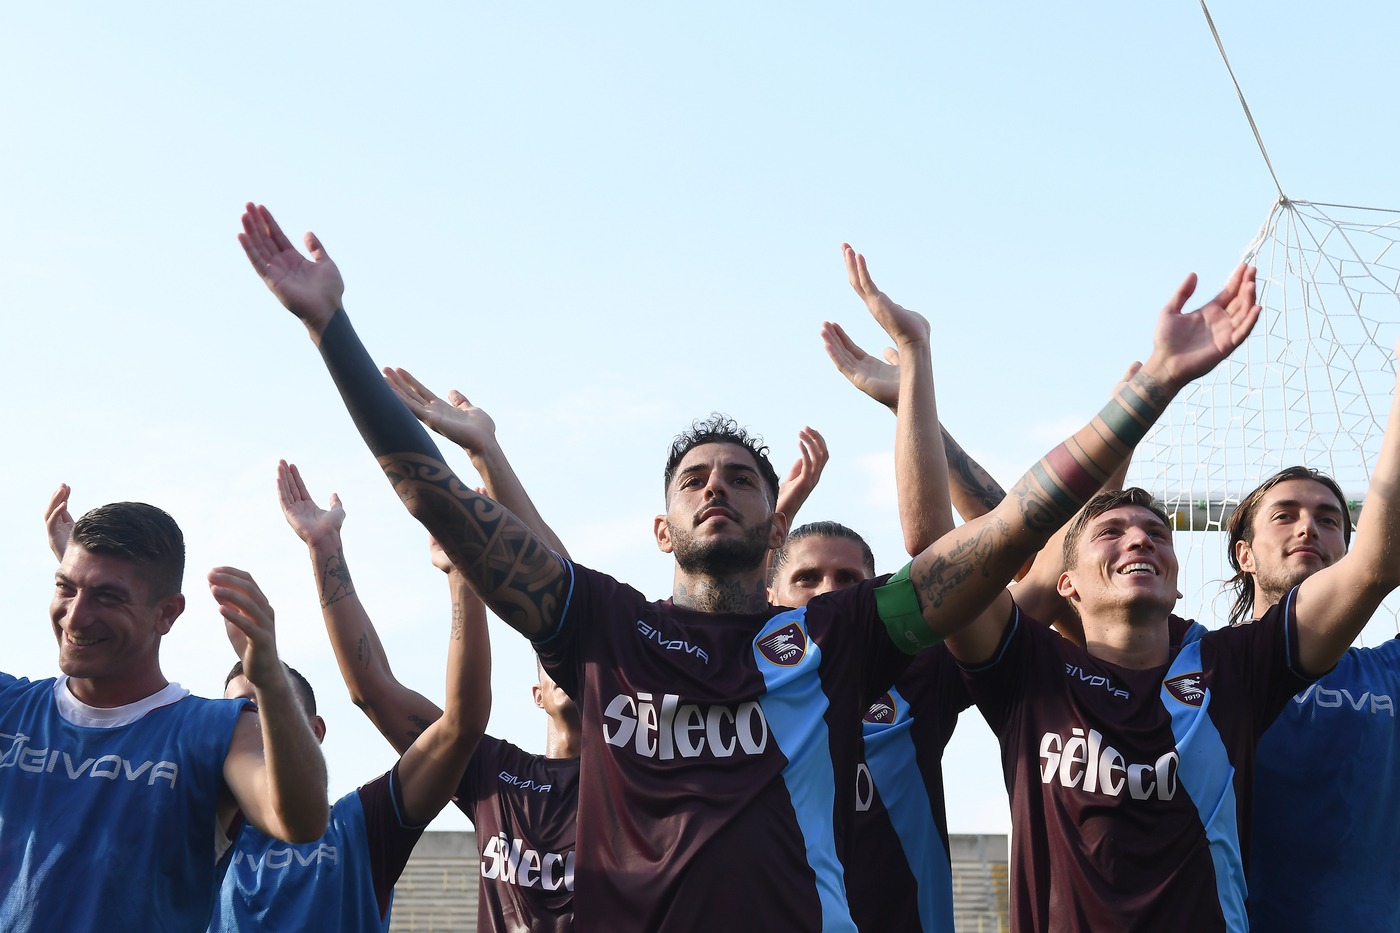 Salernitana-Perugia 21 ottobre: si gioca per il campionato di Serie B. Entrambe le squadre stanno facendo bene nell'ultimo periodo.